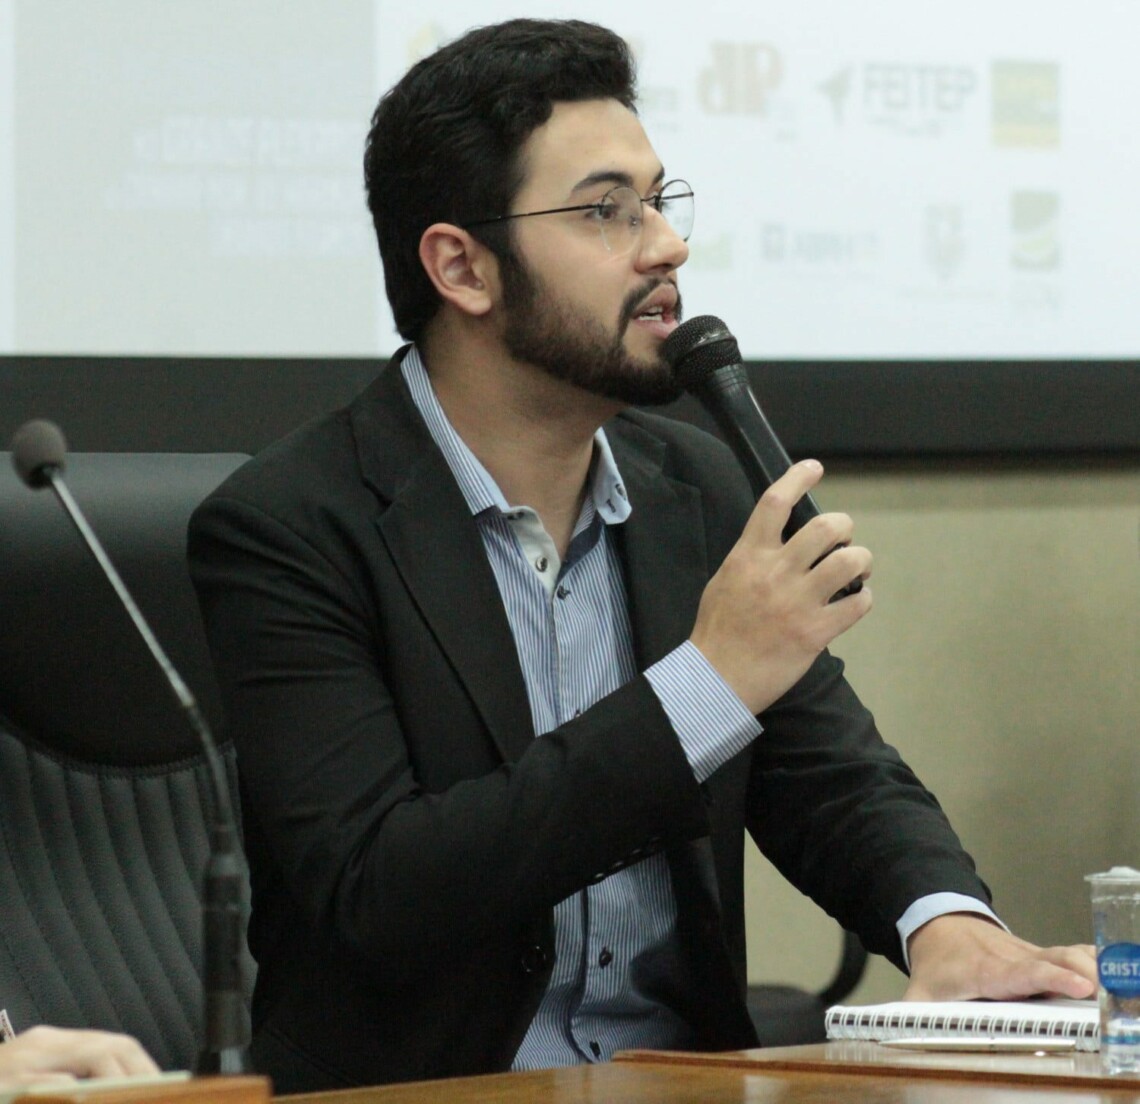 OPINIÃO: Eleições Municipais 2020 na visão do cientista político maringaense, Marcos Costa